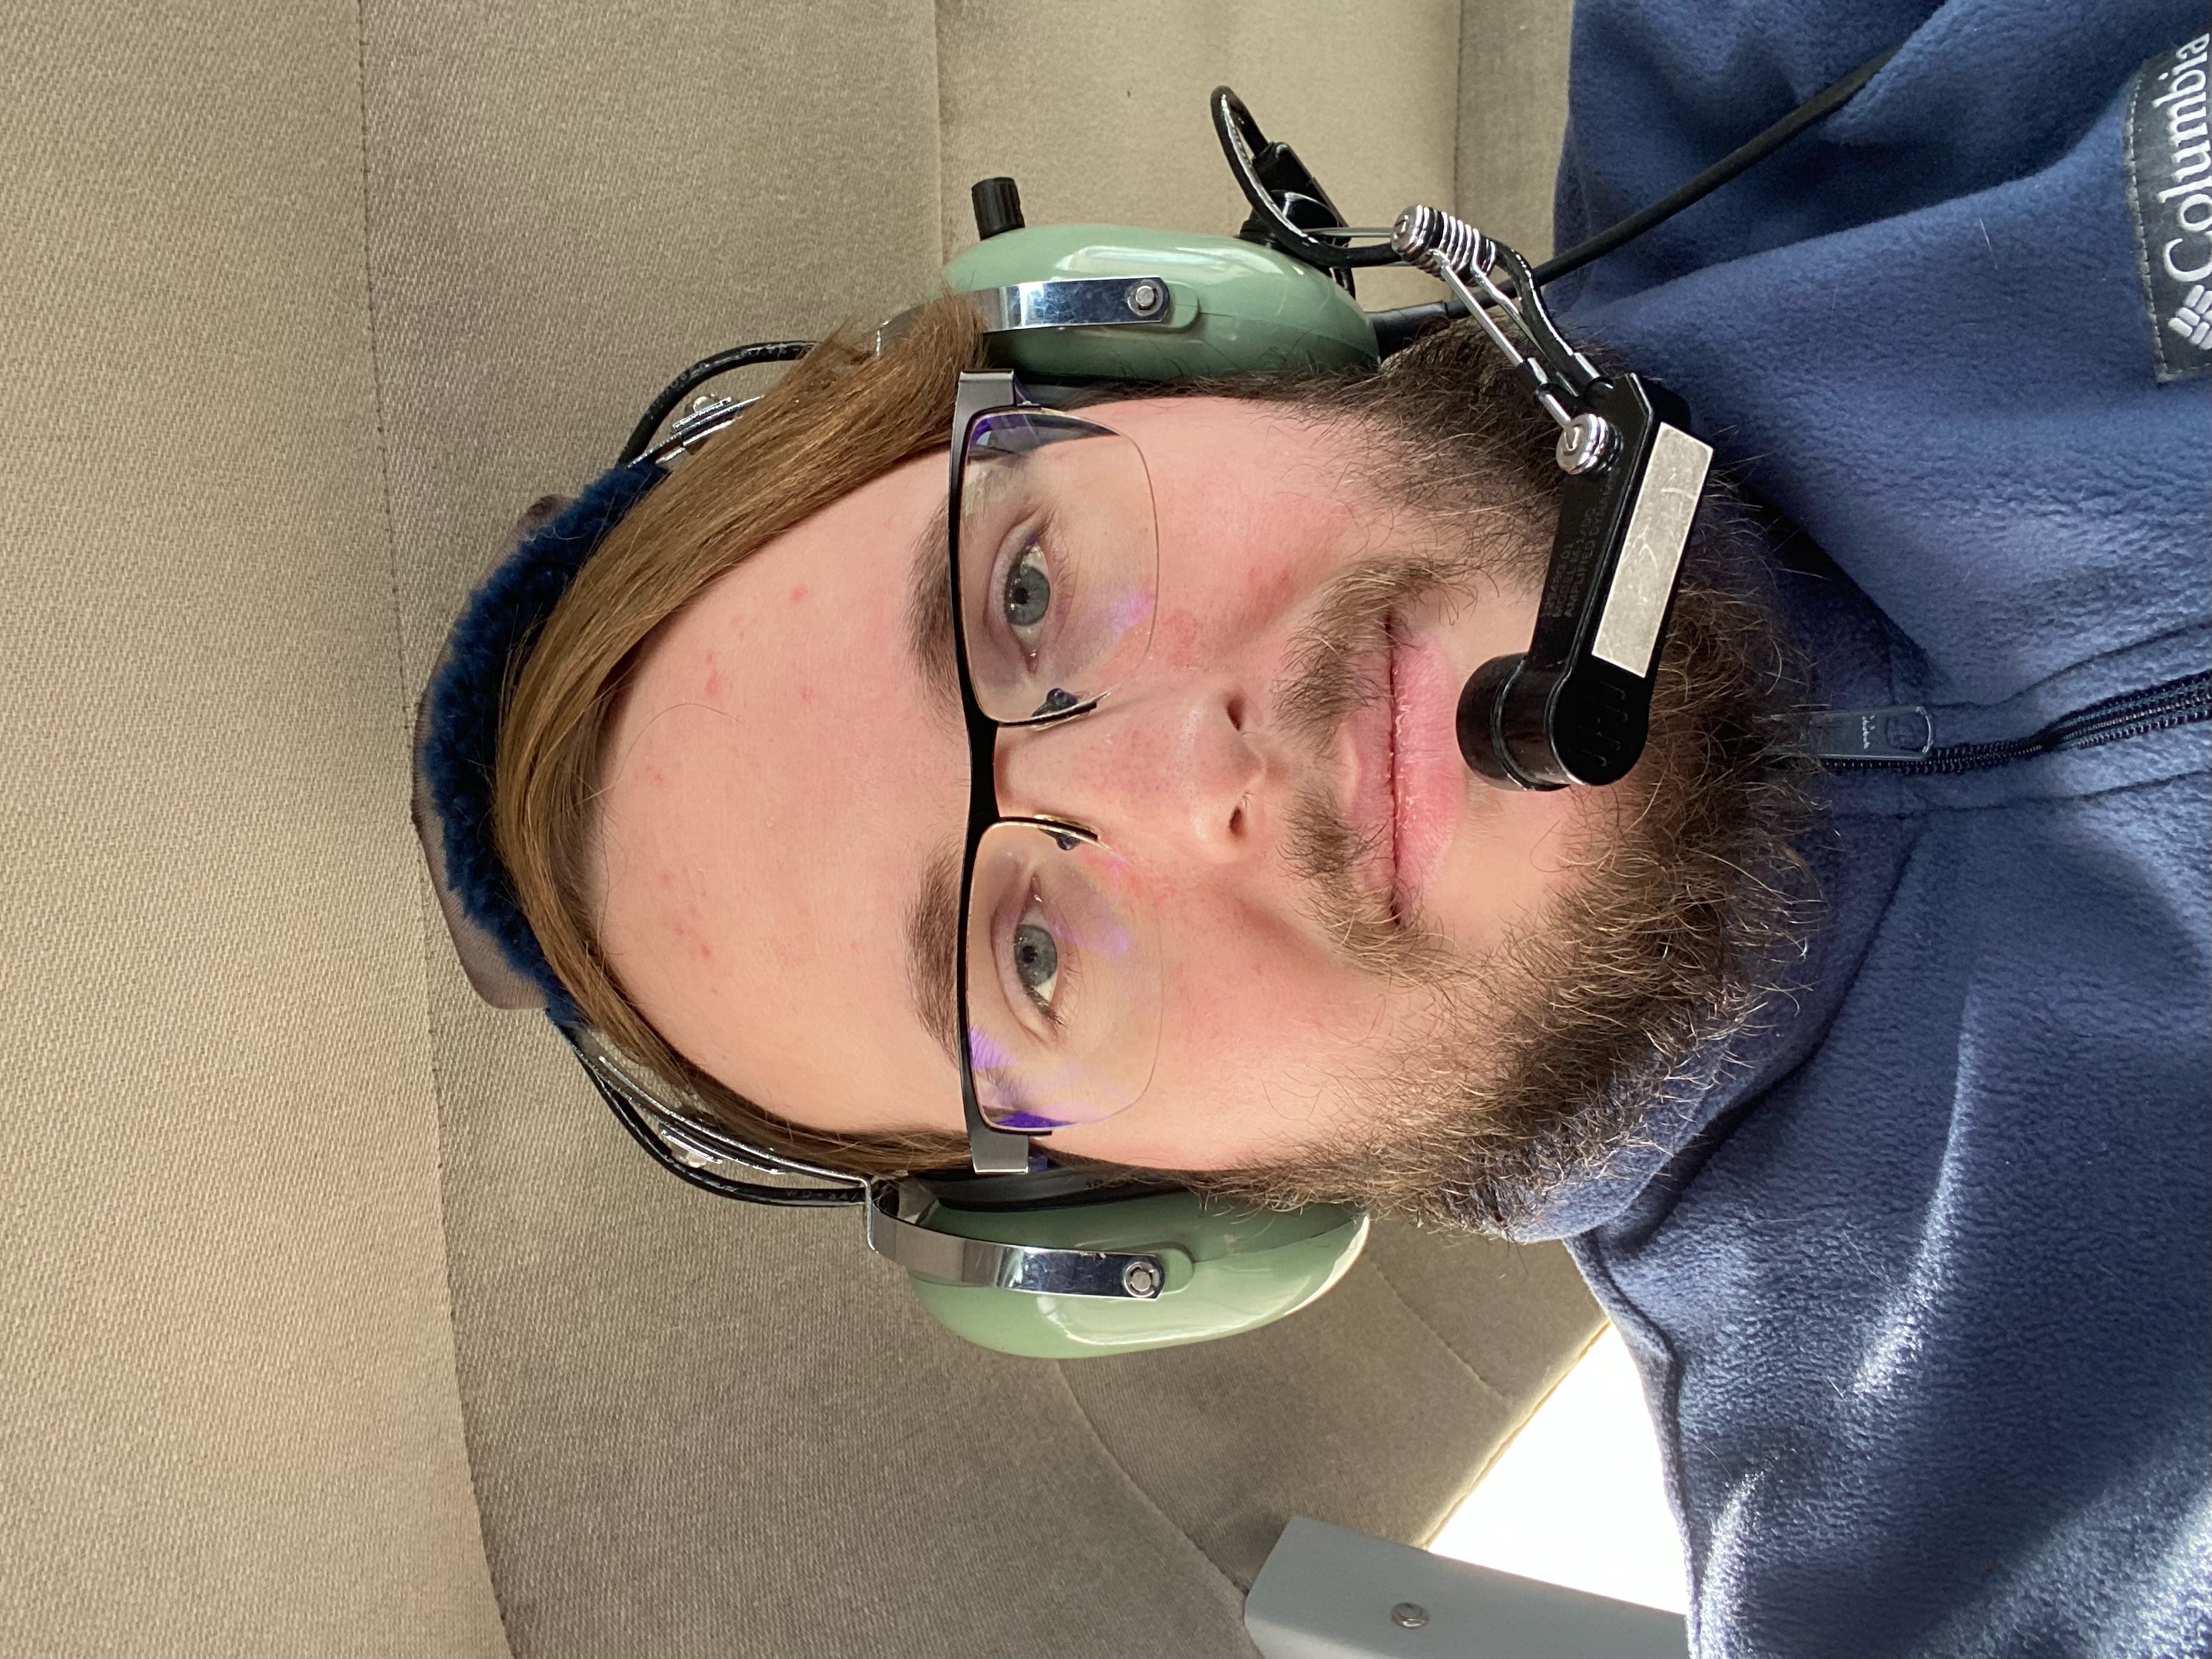 a man wearing an aviation headset